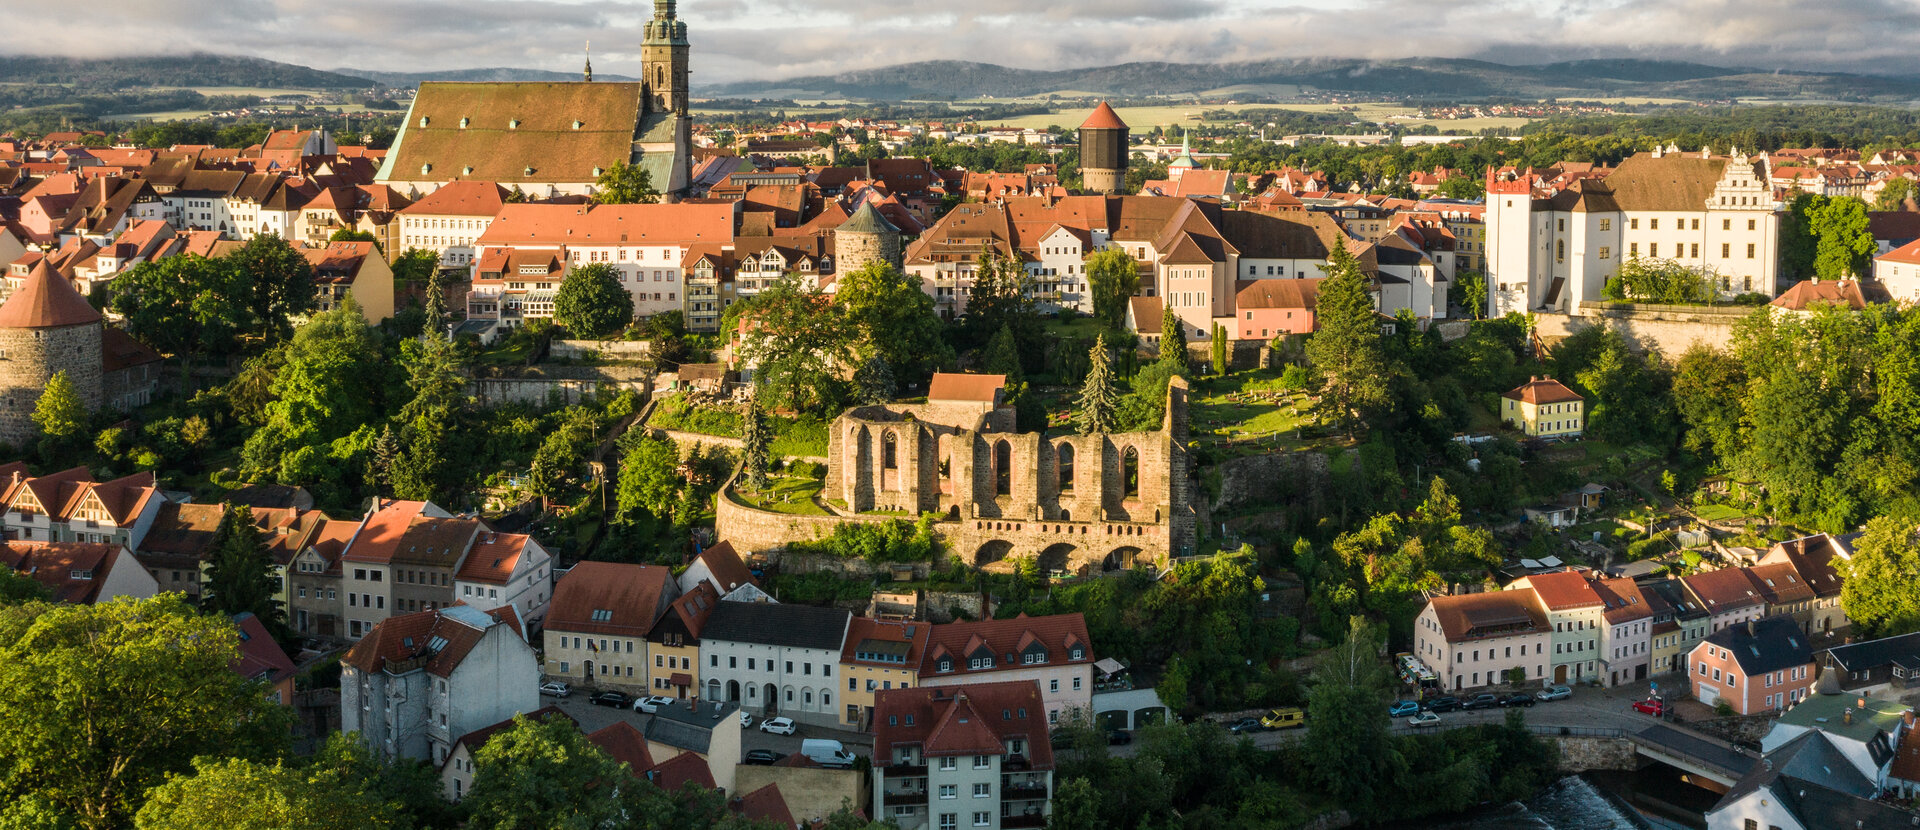 Bautzen a krajina vřesovišť a rybníků Kultura a příroda - v srdci Horní Lužice